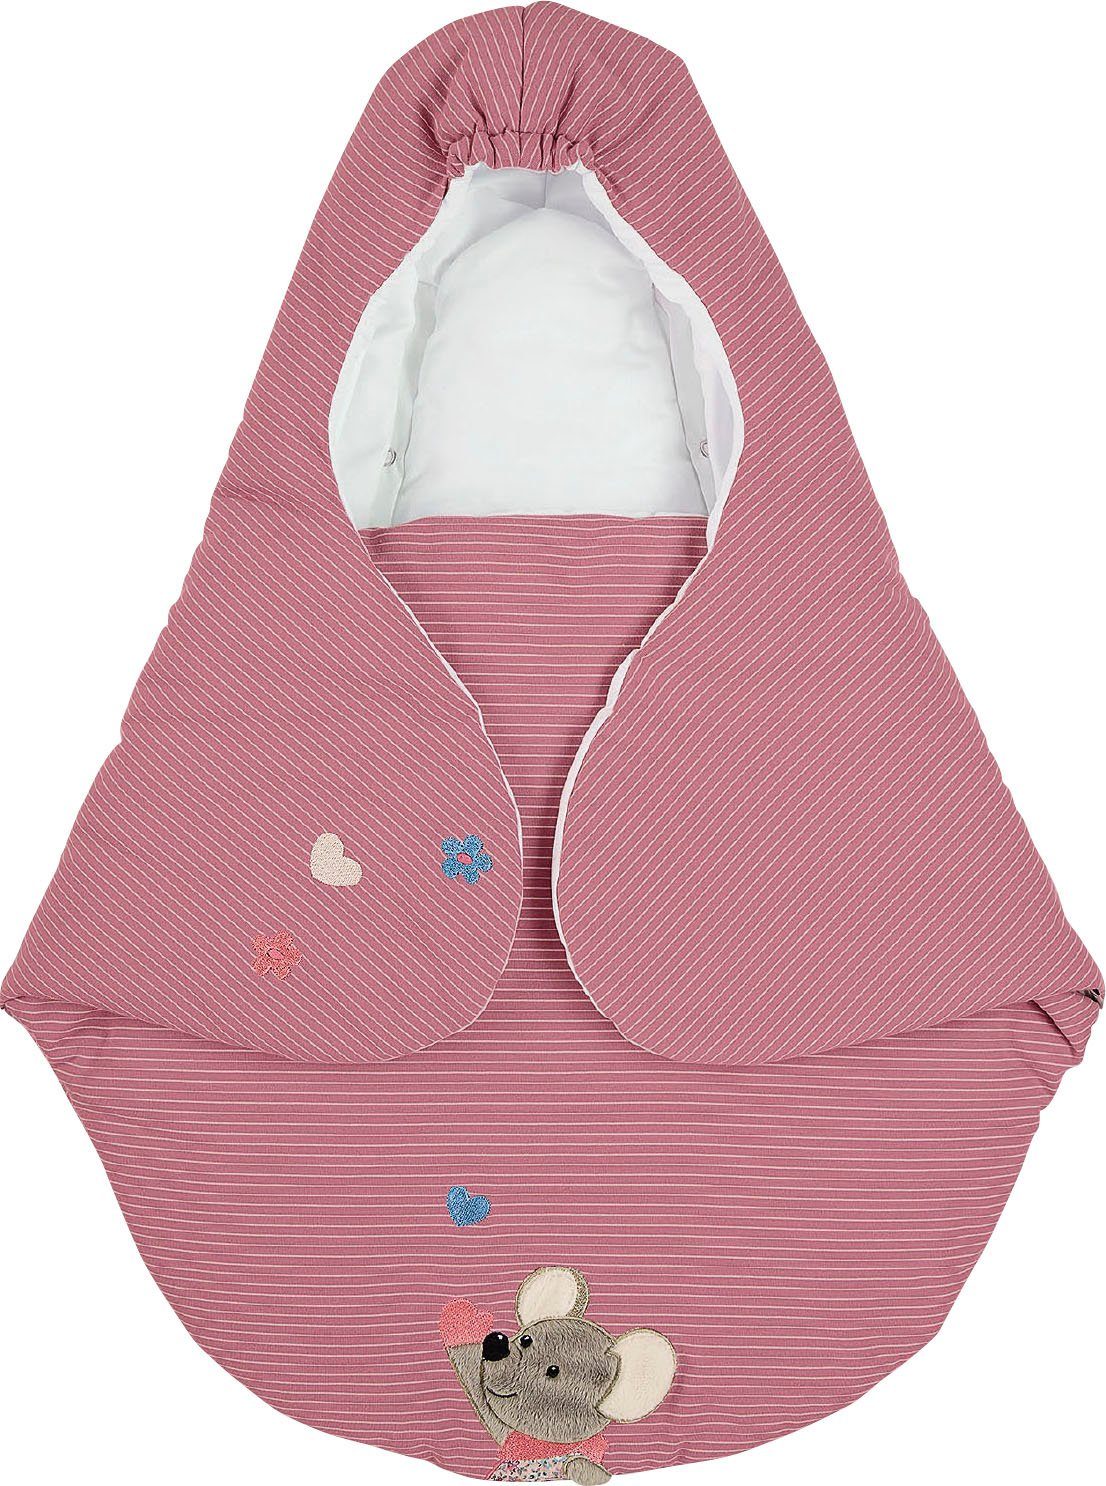 Decke für Babyschalen 3 oder 5 Punkt-Gurt-System BAMBINIWELT Einschlagdecke 